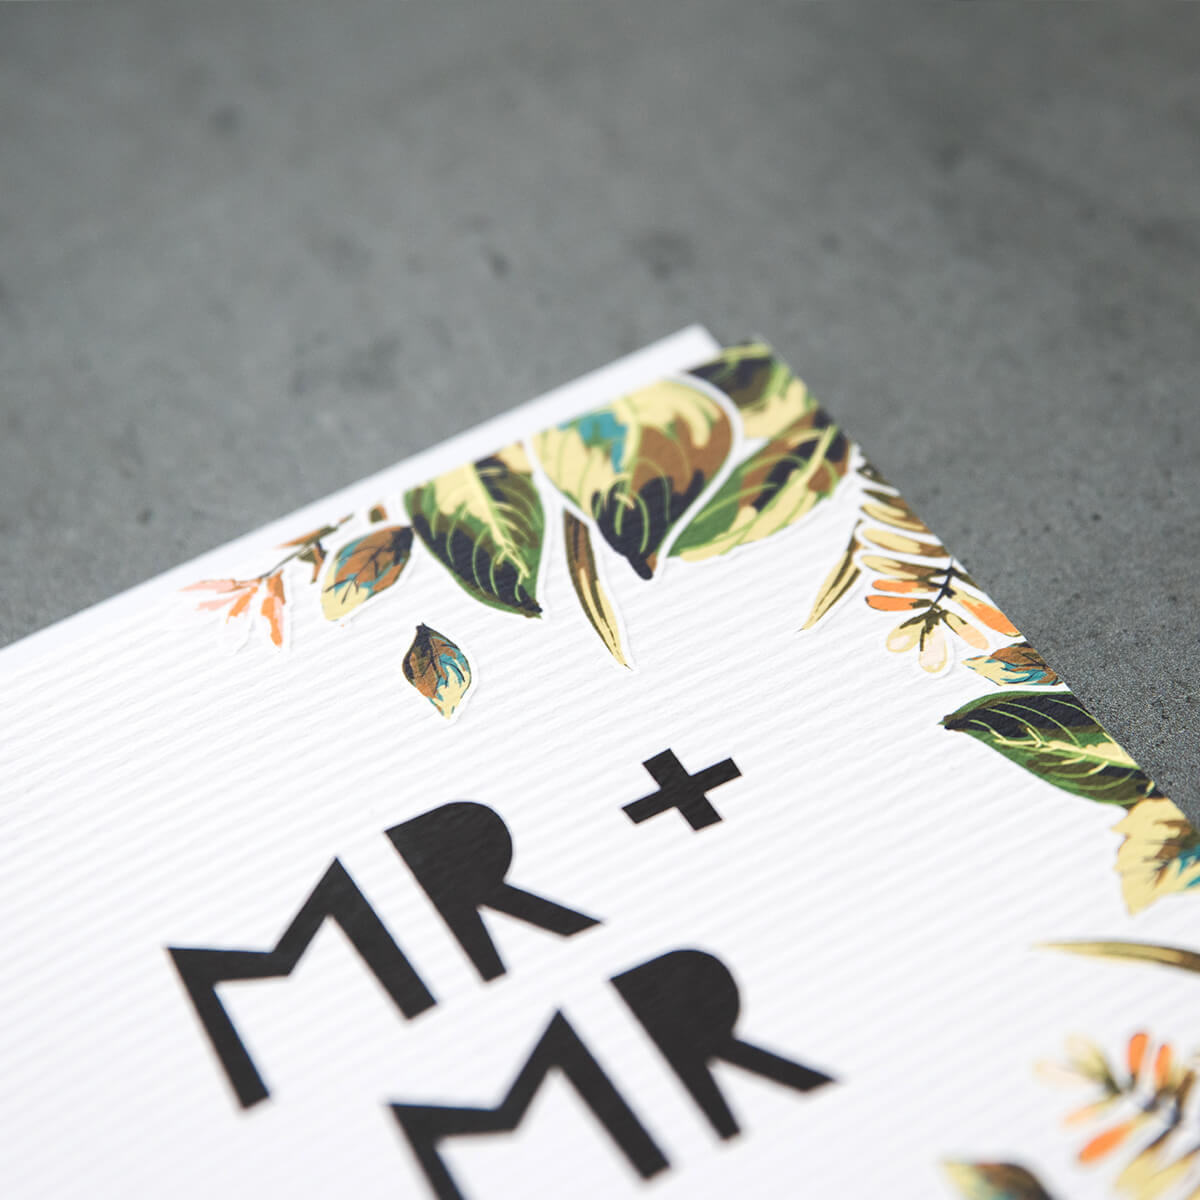 &#39;Mr + Mr&#39; Gay Wedding Card - I am Nat Ltd - Greeting Card